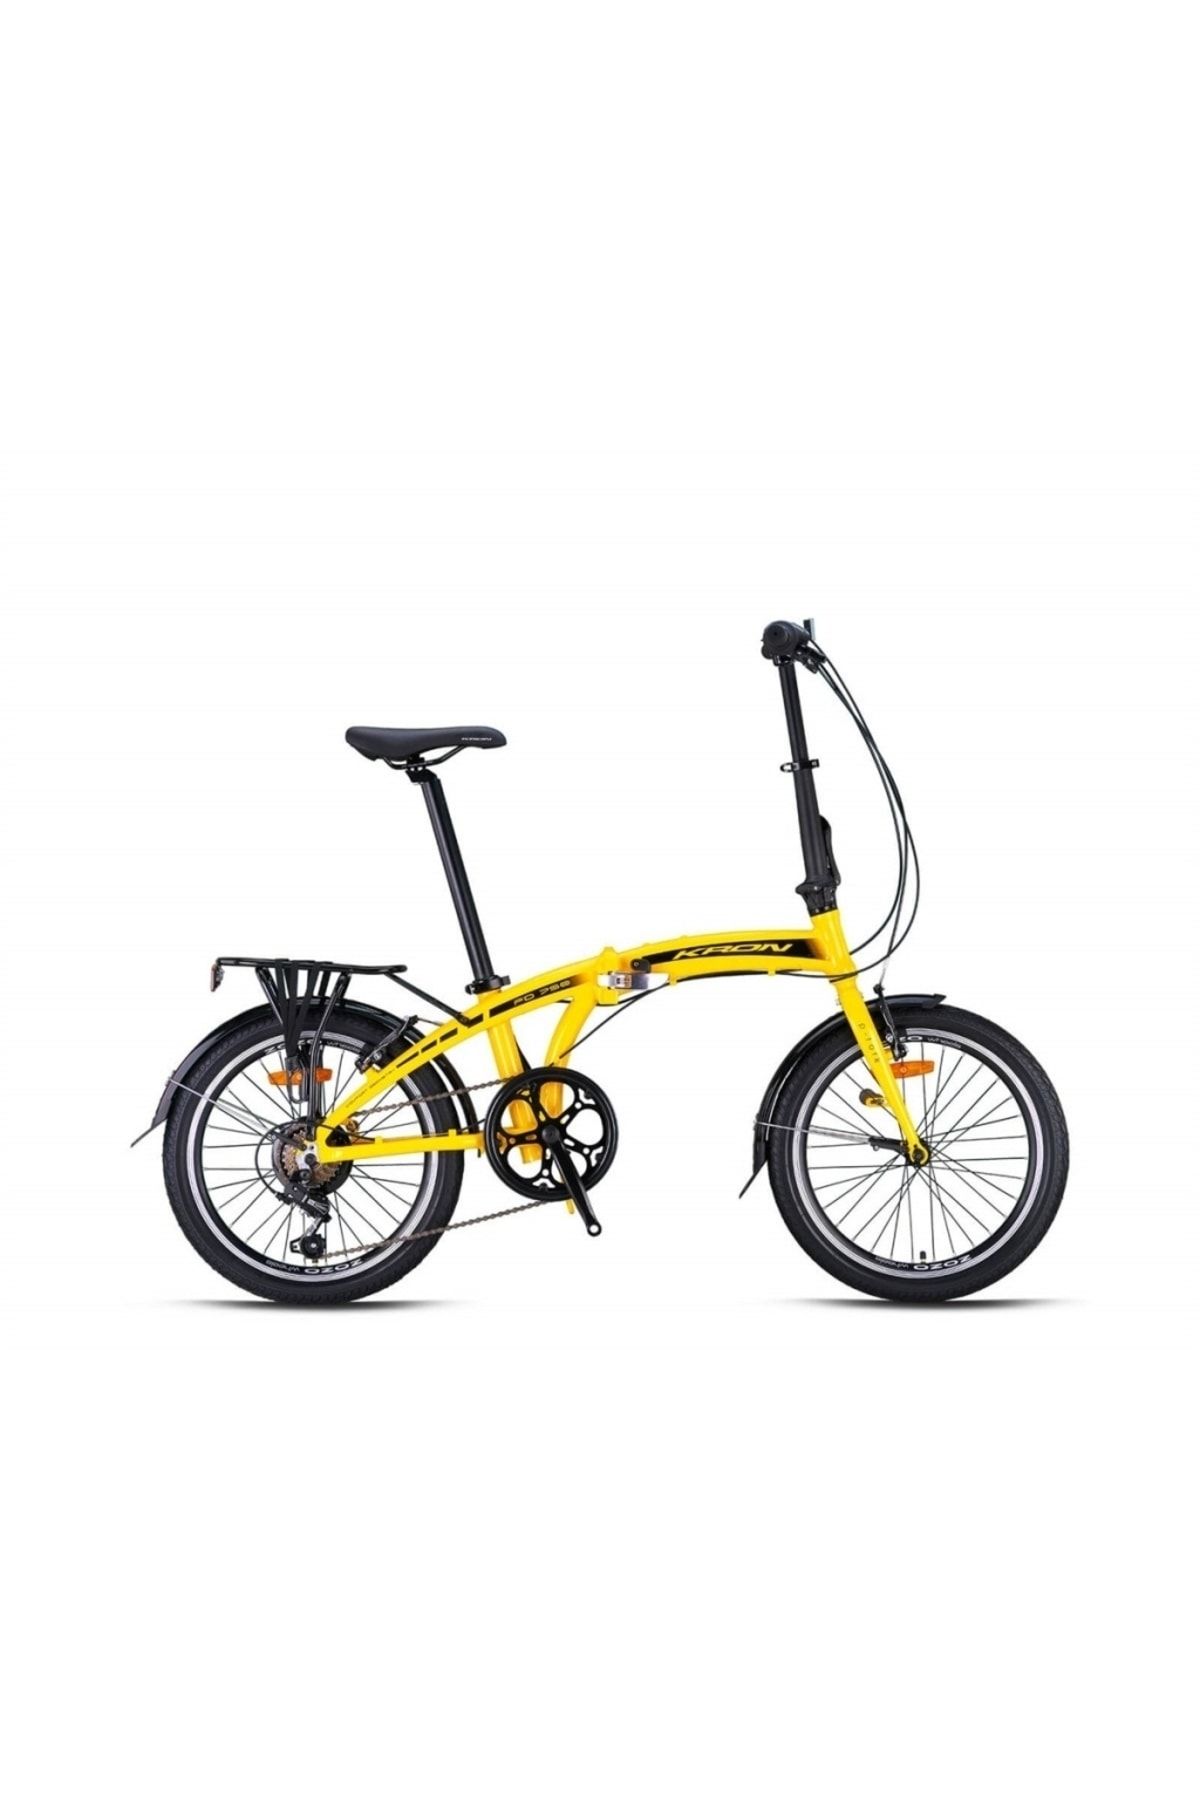 Kron Fd-750 20 Jant 7 Vites V-fren Katlanır Bisiklet -sarı-siyah-beyaz